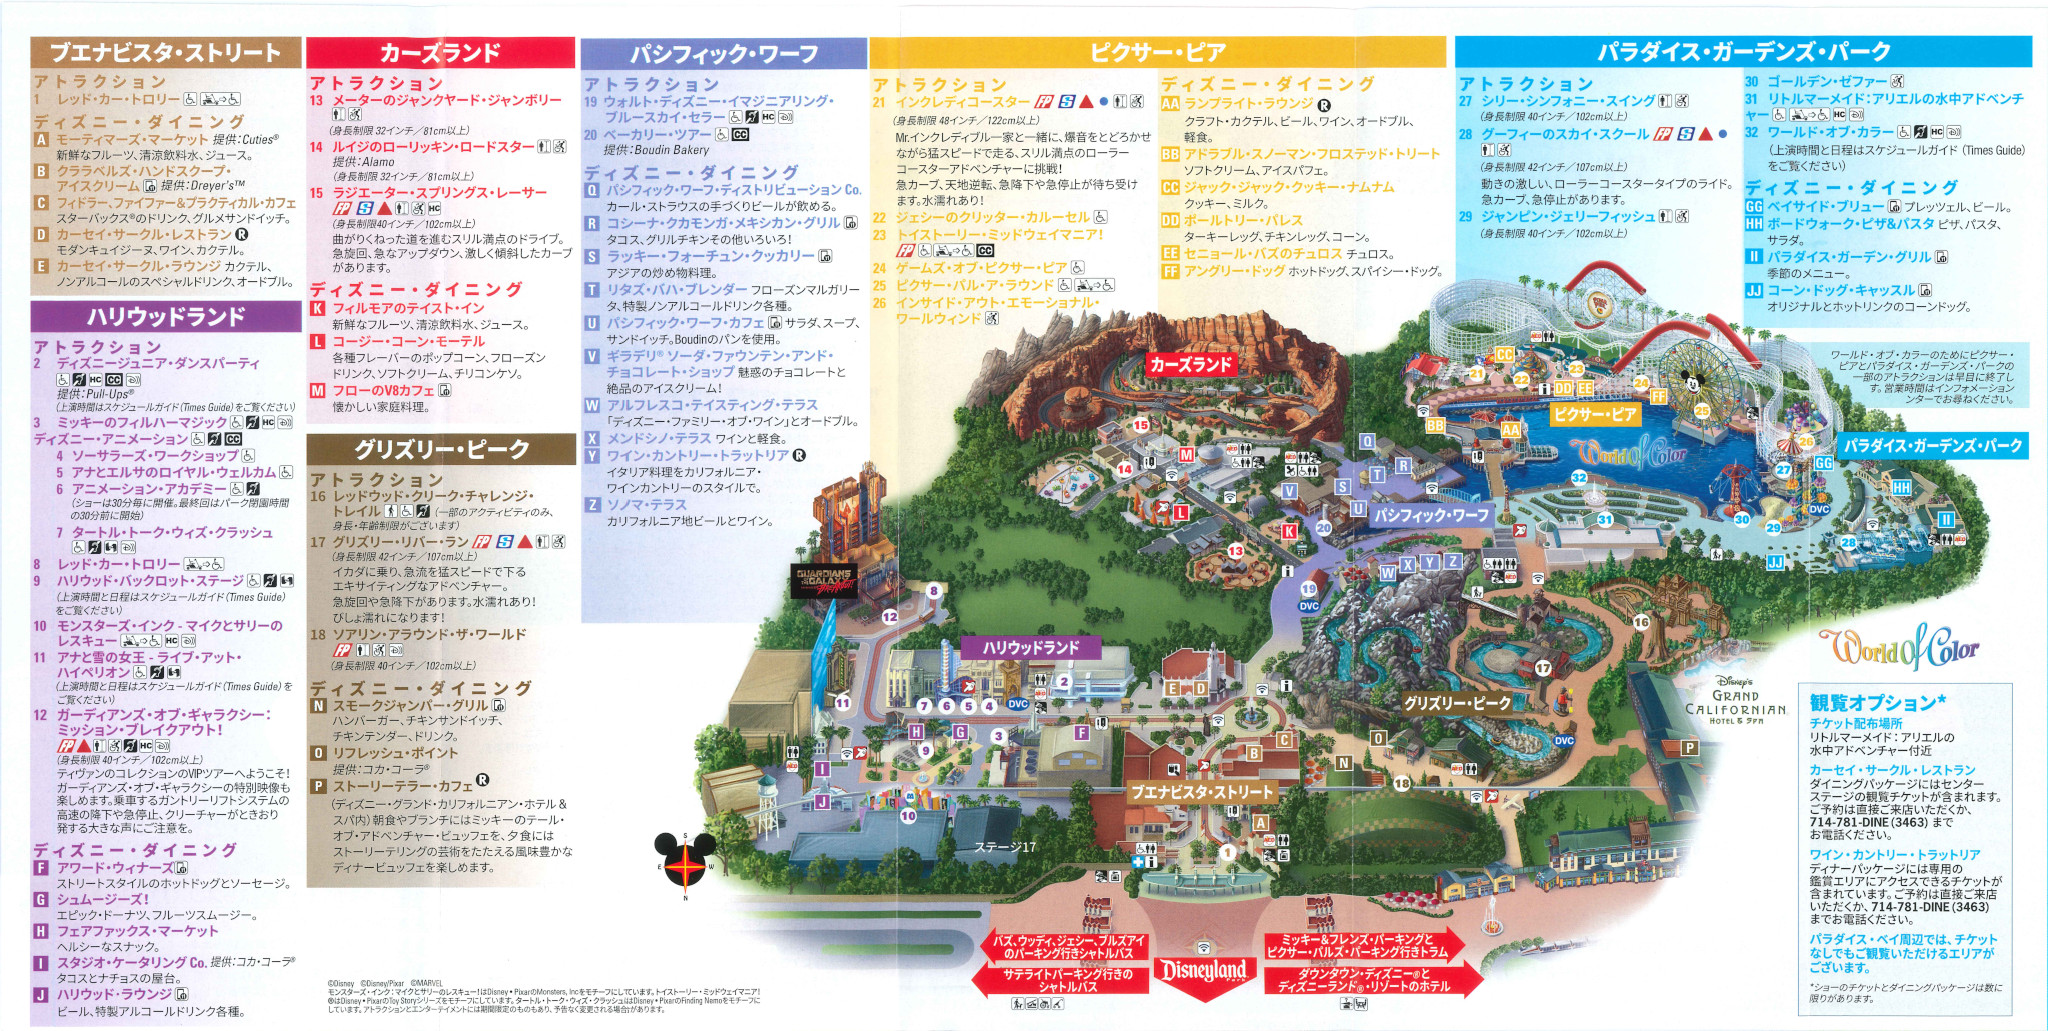 DLR カリフォルニア・ディズニー・パークマップ 日本語版ガイドマップ 